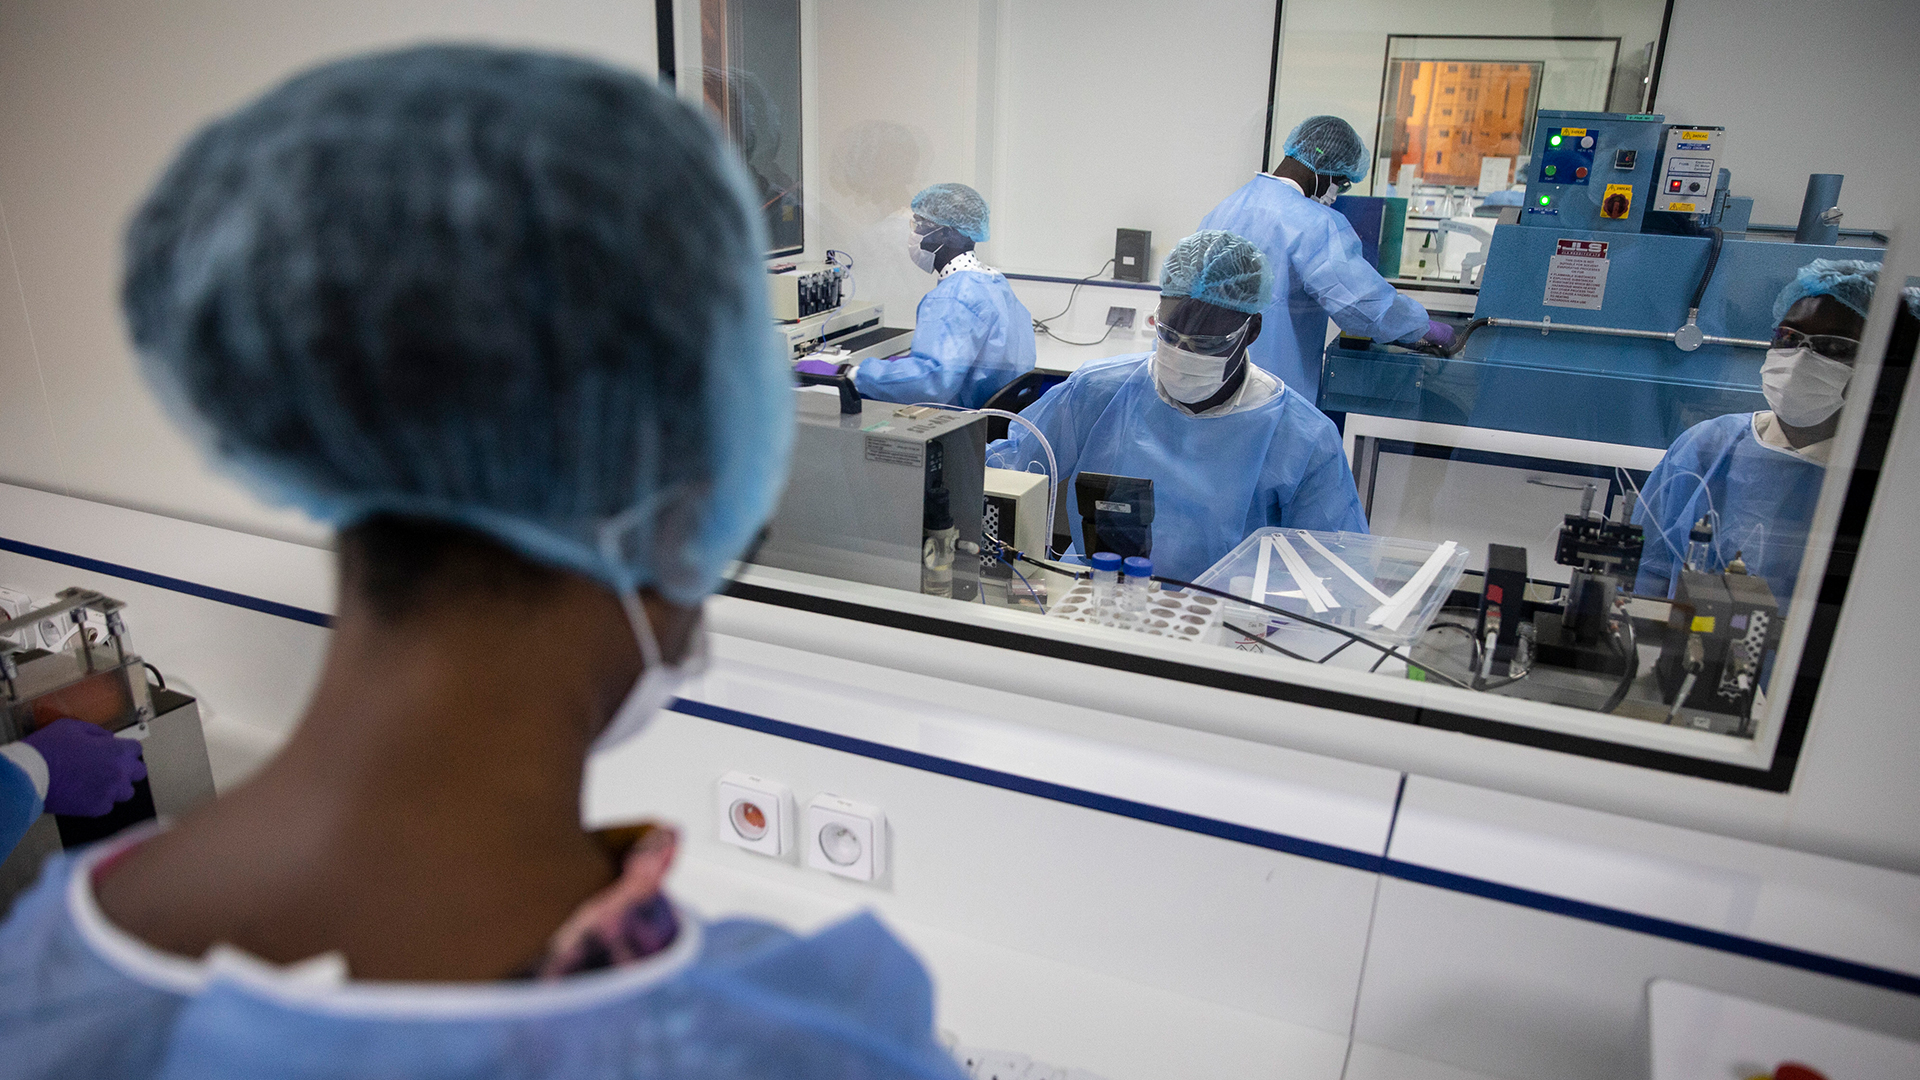  Produktion von Antigen-Tests im Institut Pasteur für den Senegal. | picture alliance / photothek